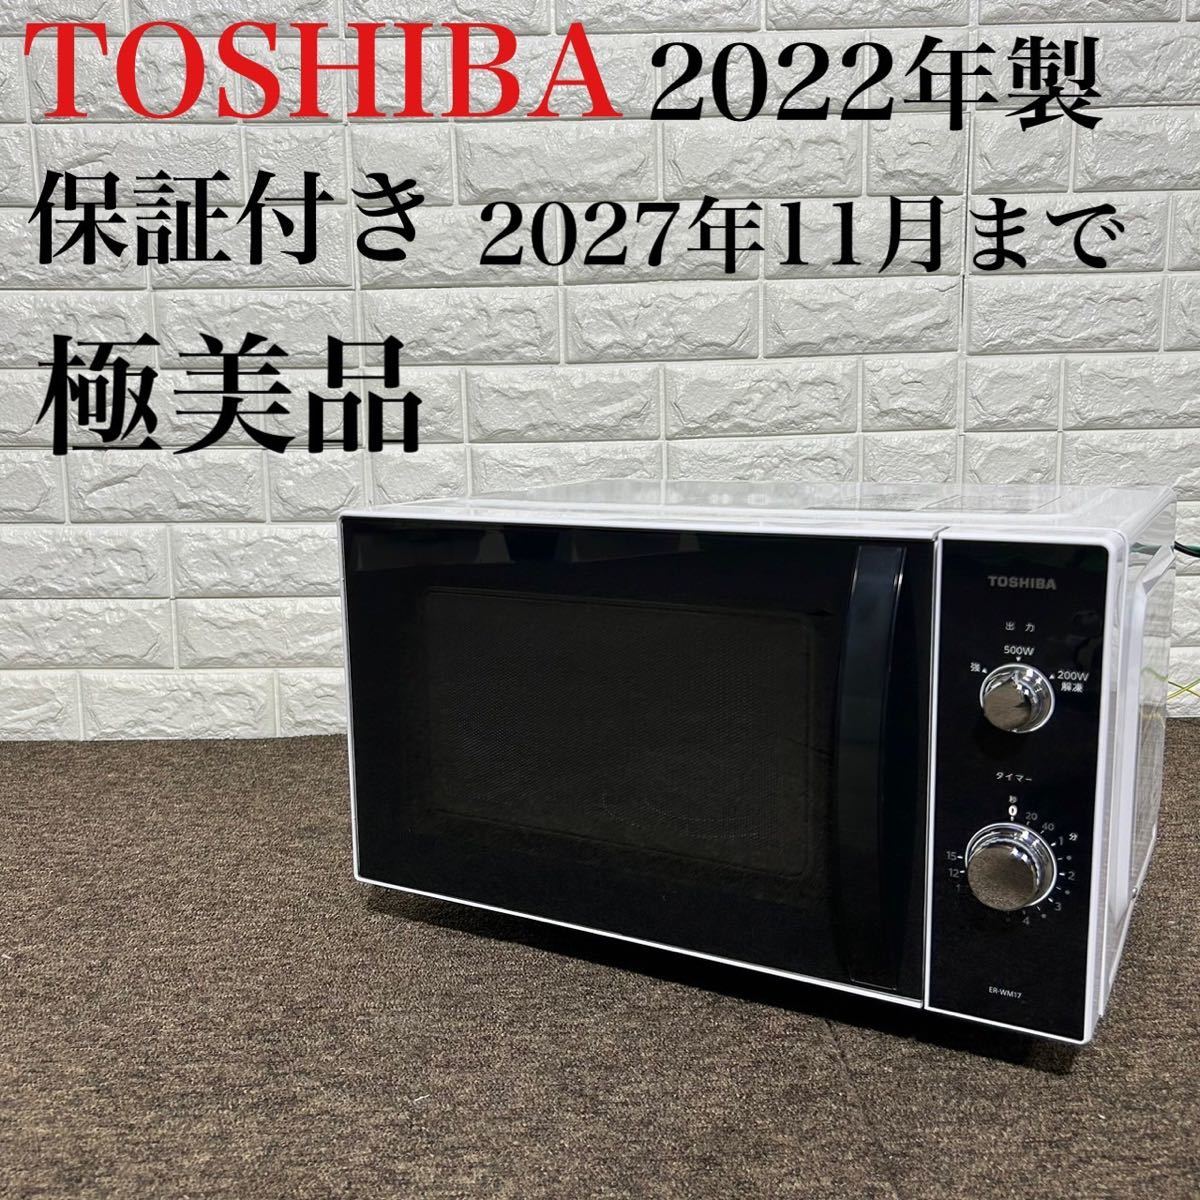 保証付き 極美品 TOSHIBA 電子レンジ ER-WM17 2022年製 k0234